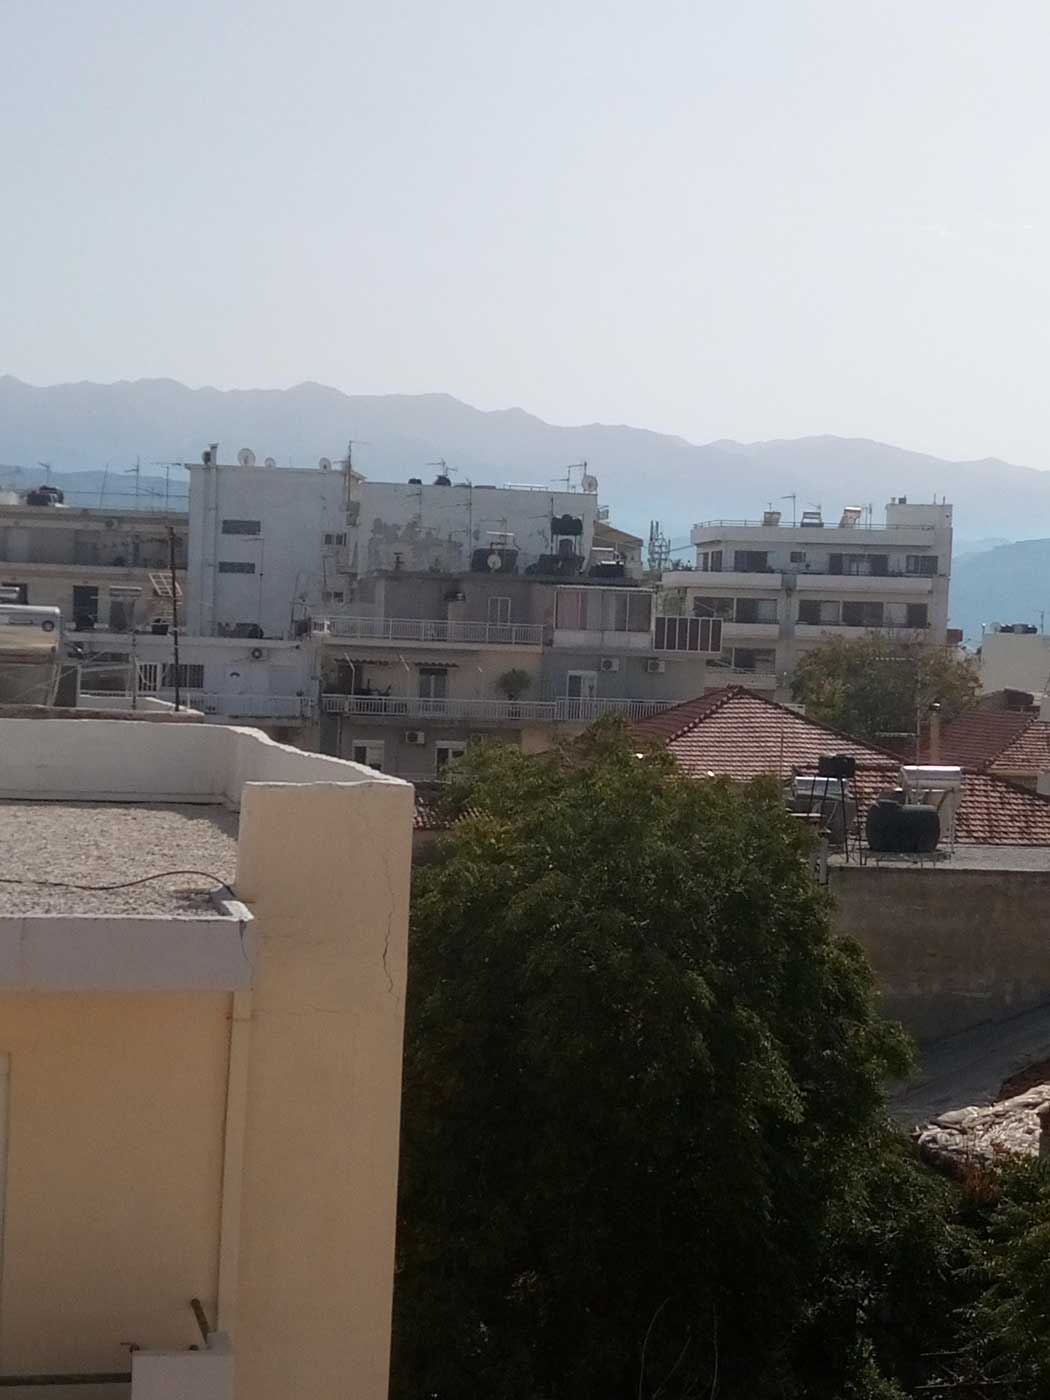 Вид на город из окна. Несколько домов средней высотности, за ними горы.